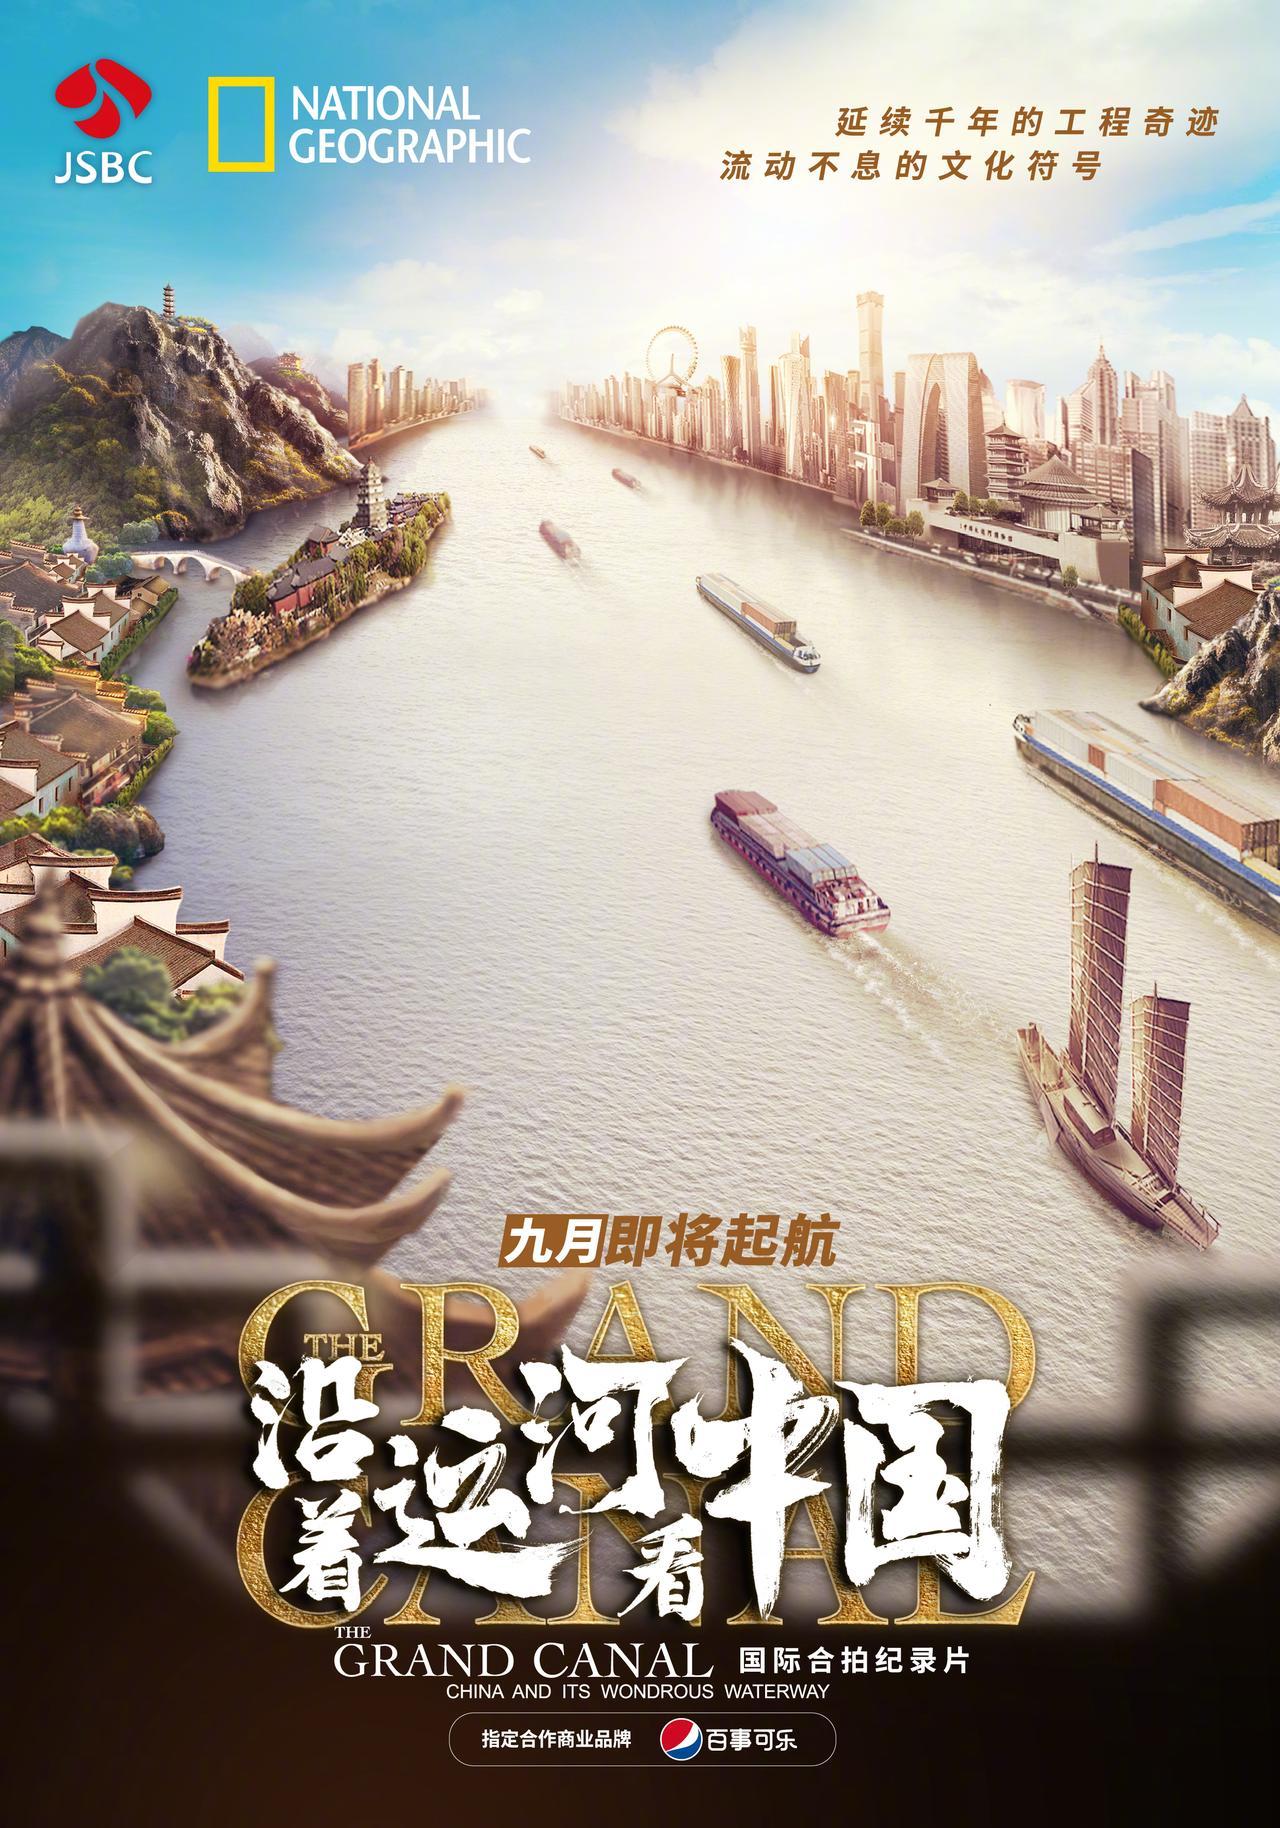 中国大运河,是流淌的文明,是凝练的智慧,是涌动的国家记忆,连接着中国